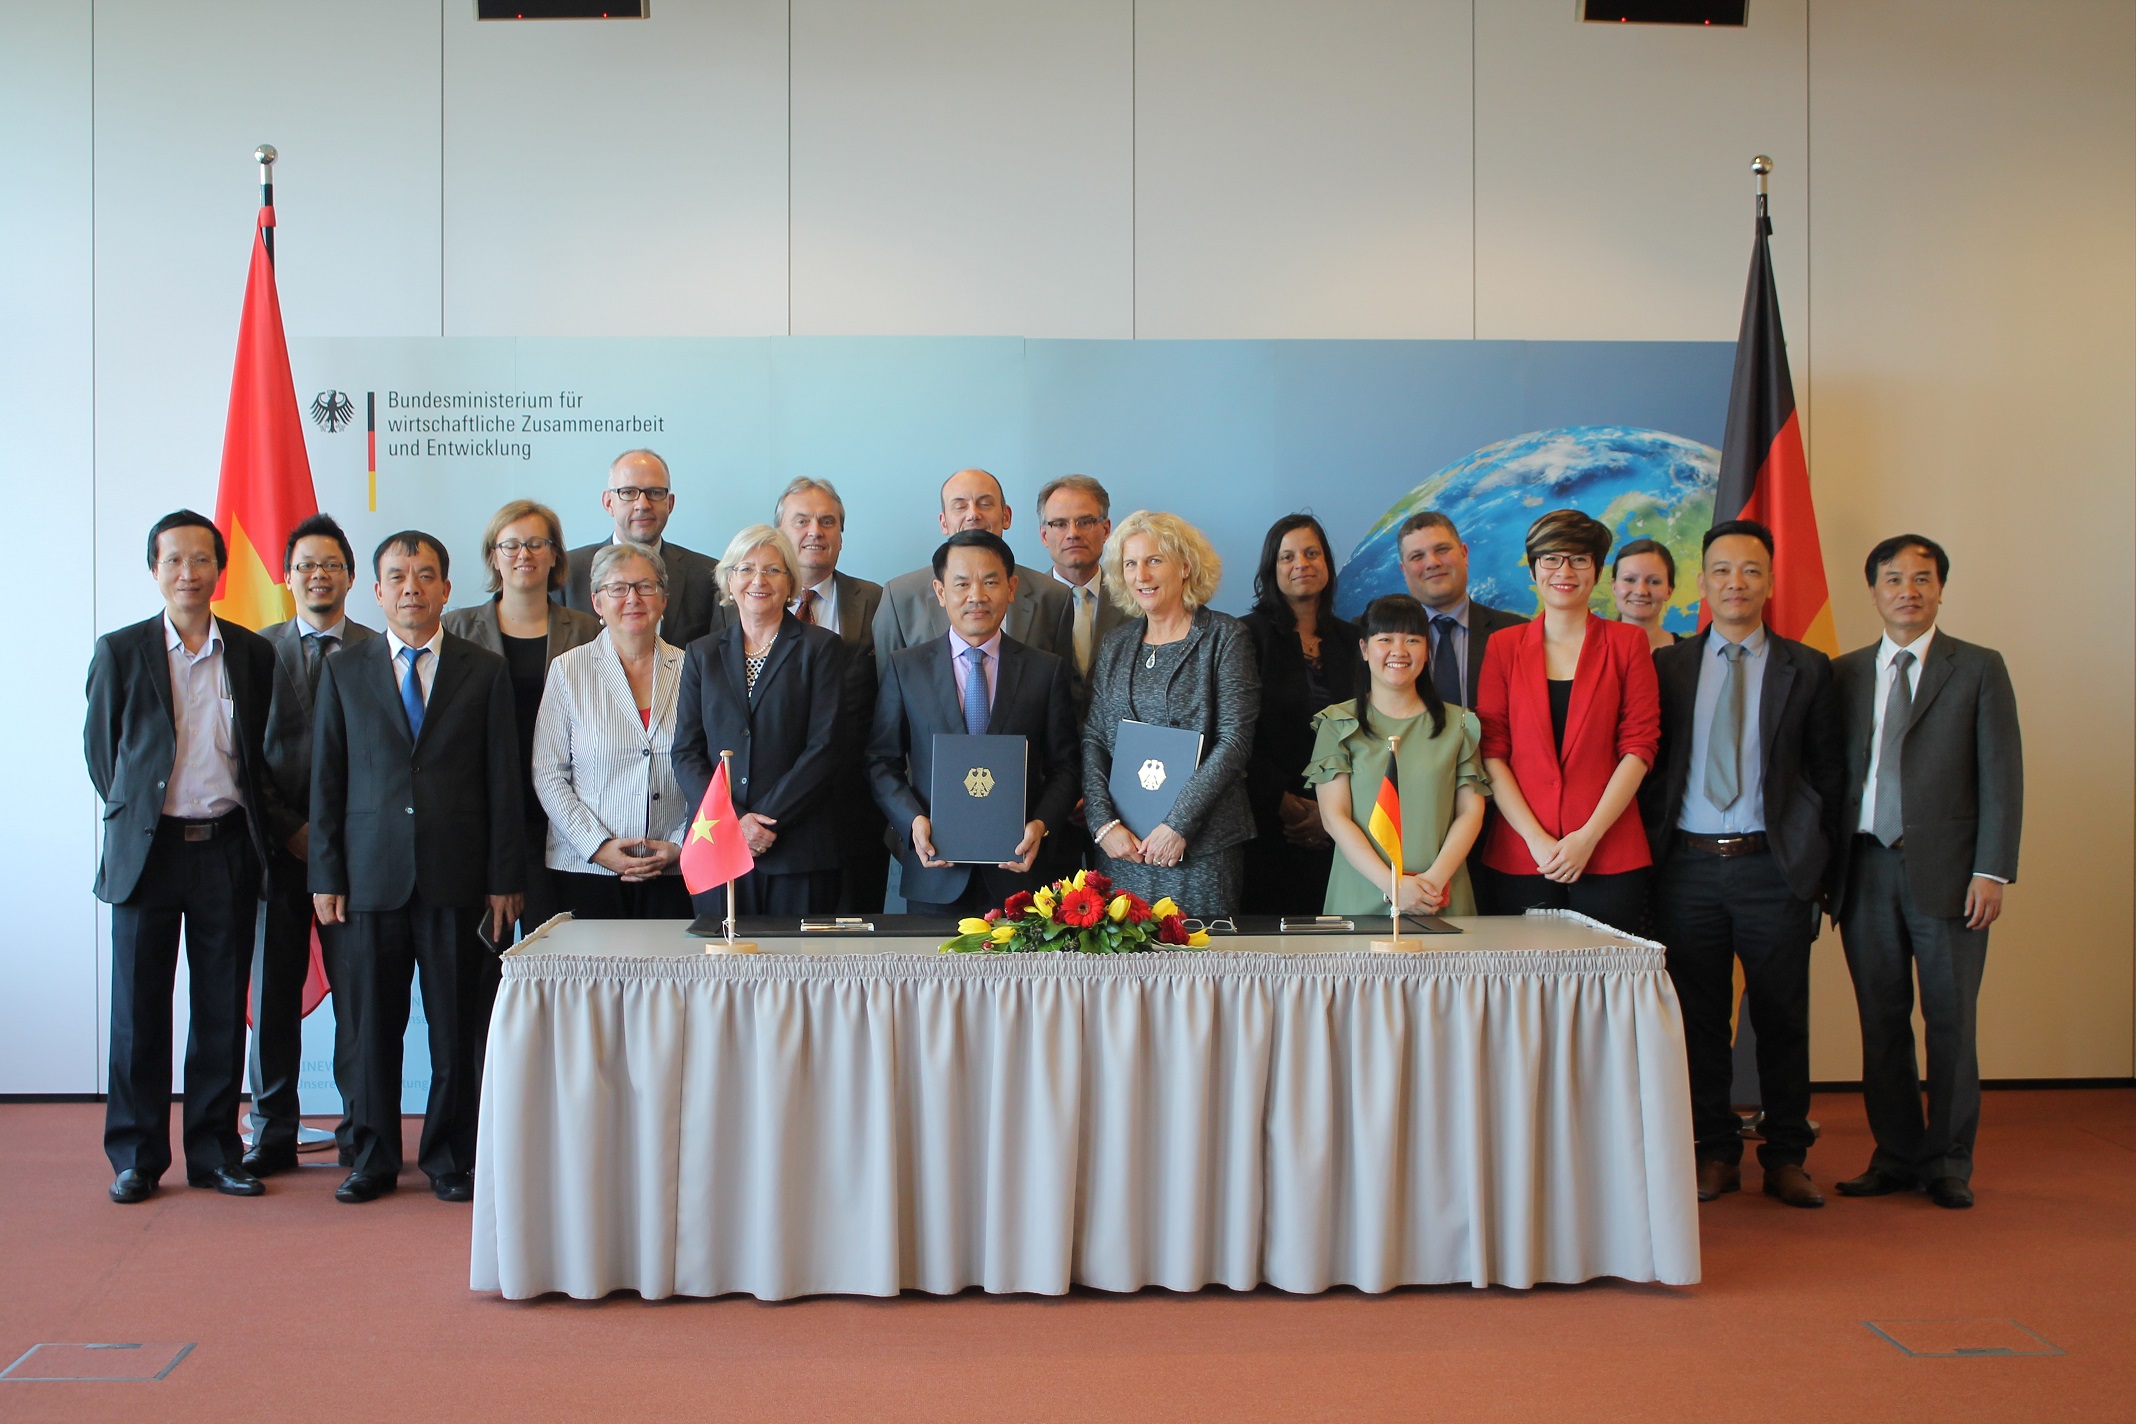 CHLB Đức hỗ trợ Việt Nam đào tạo nghề, năng lượng, môi trường và bảo vệ tài nguyên